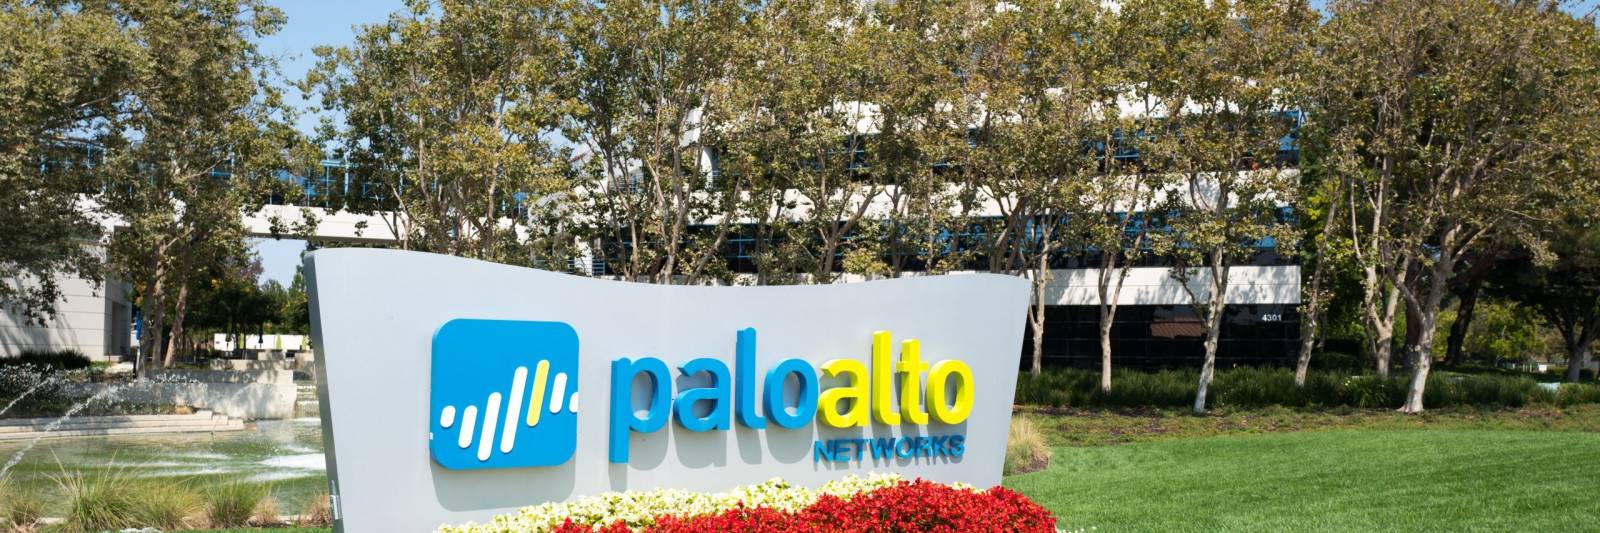 ip or just generic tech? palo alto argues centripetal patent